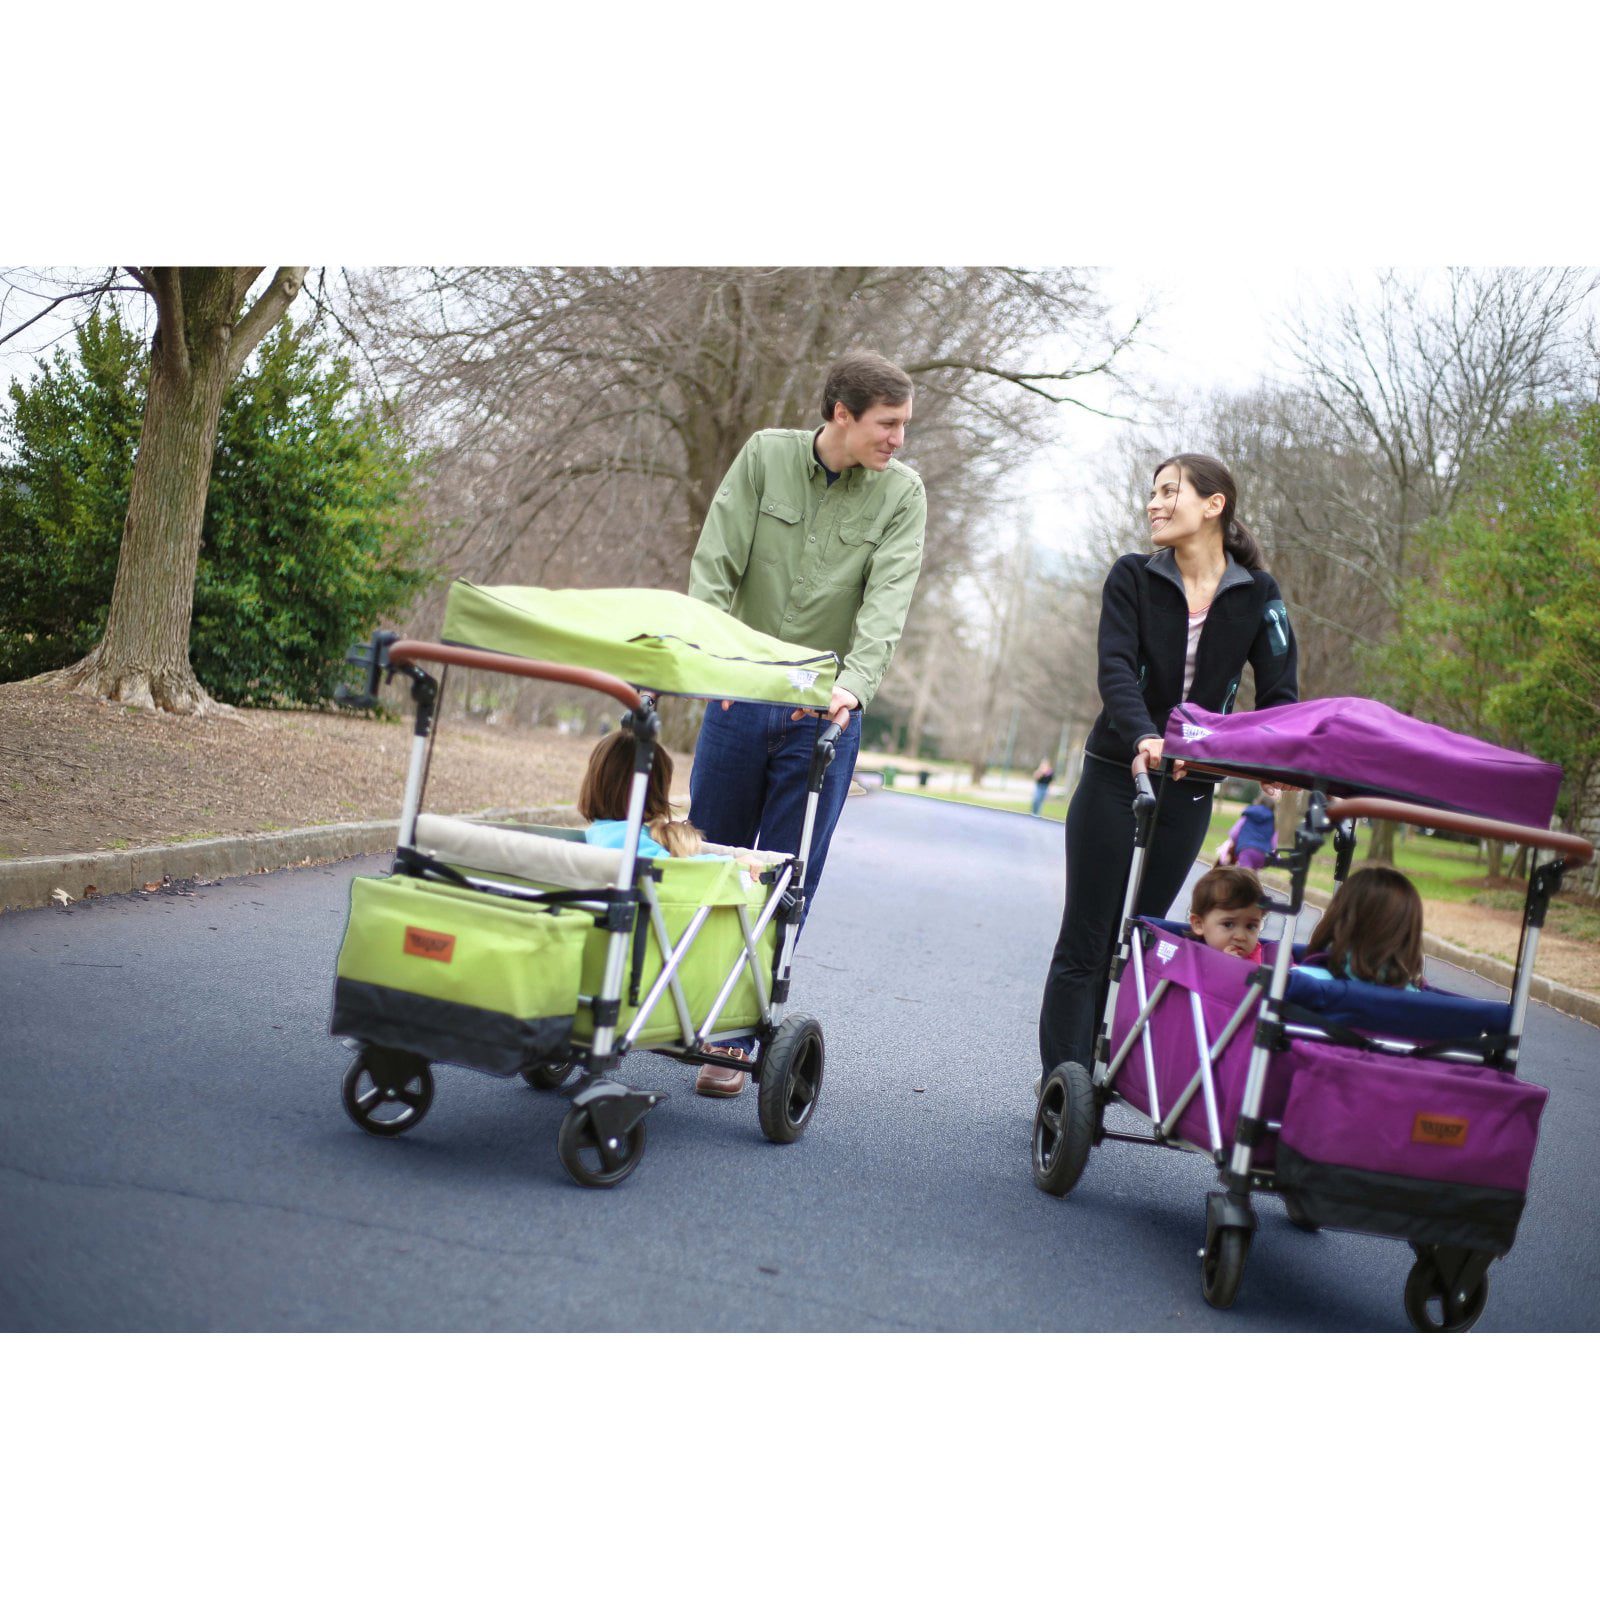 keenz stroller wagon accessories